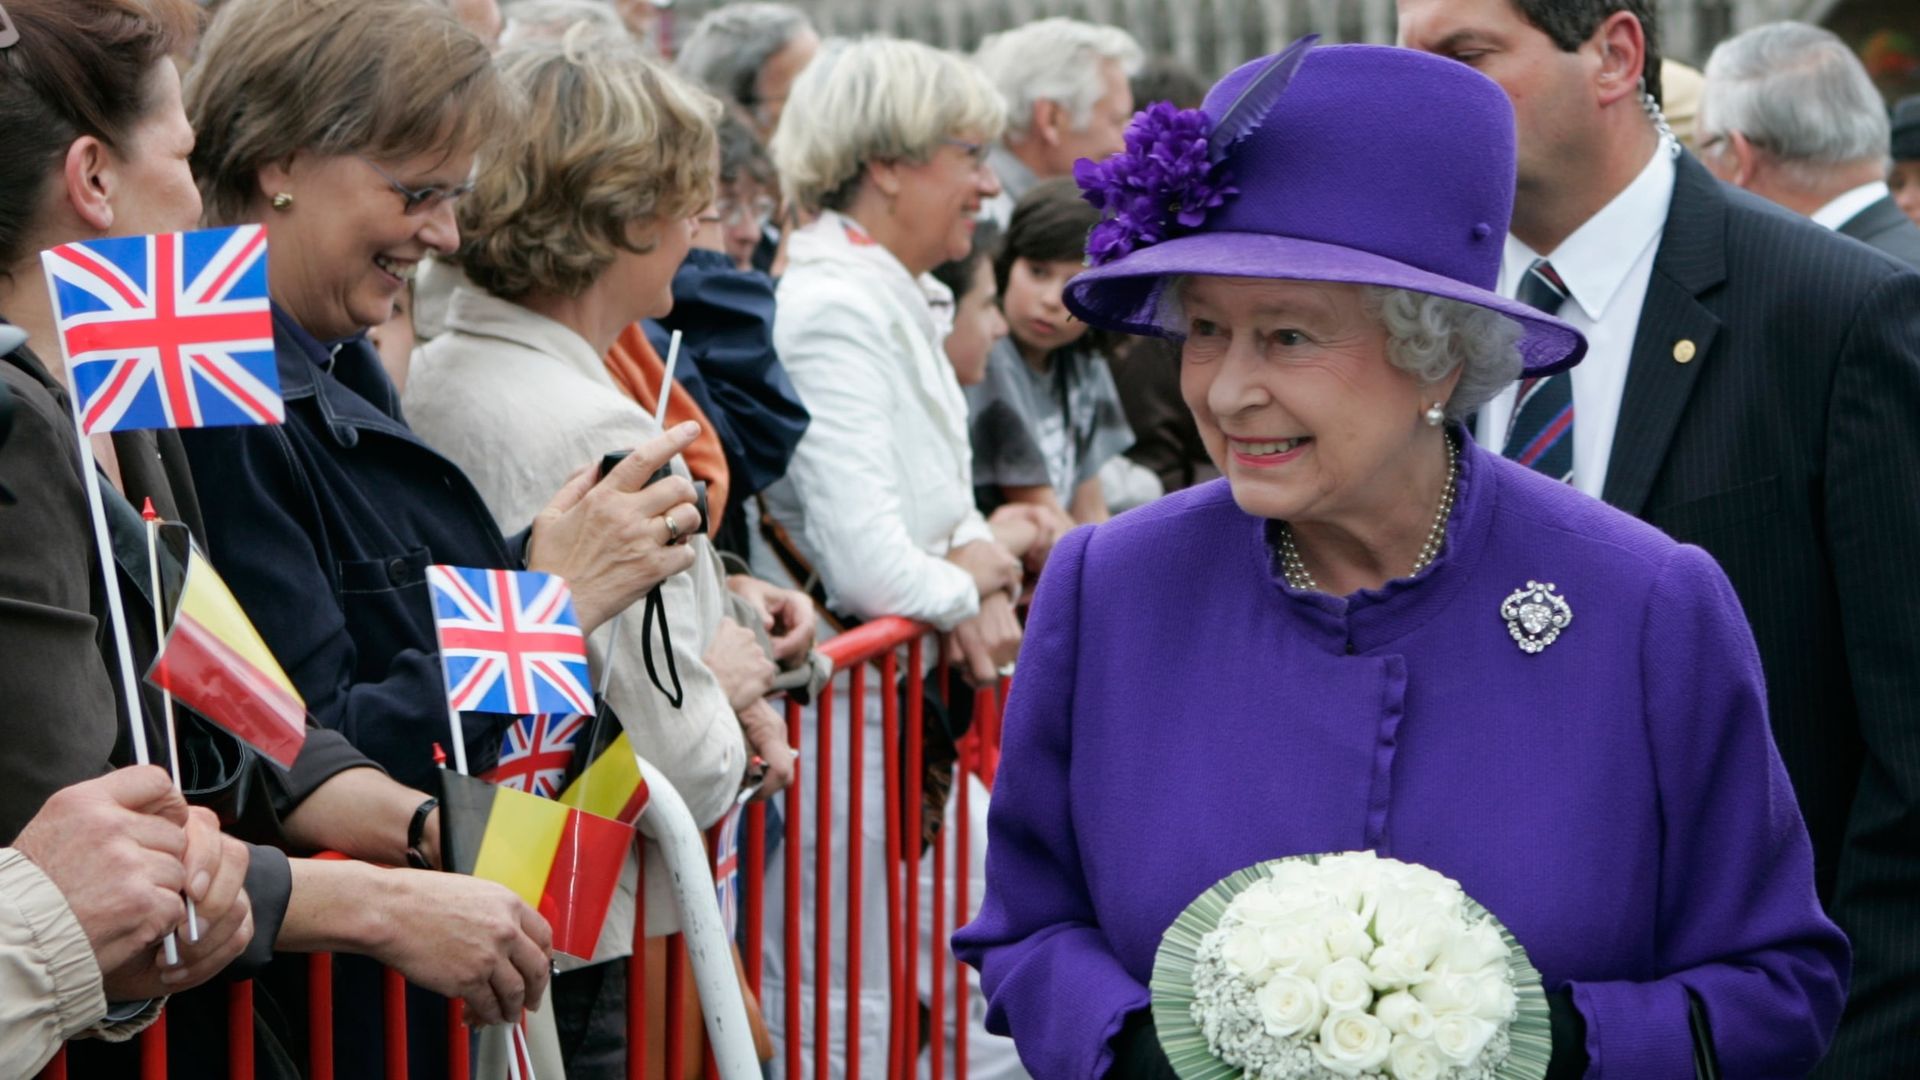 Elizabeth II: A Diamond Jubilee Celebration background